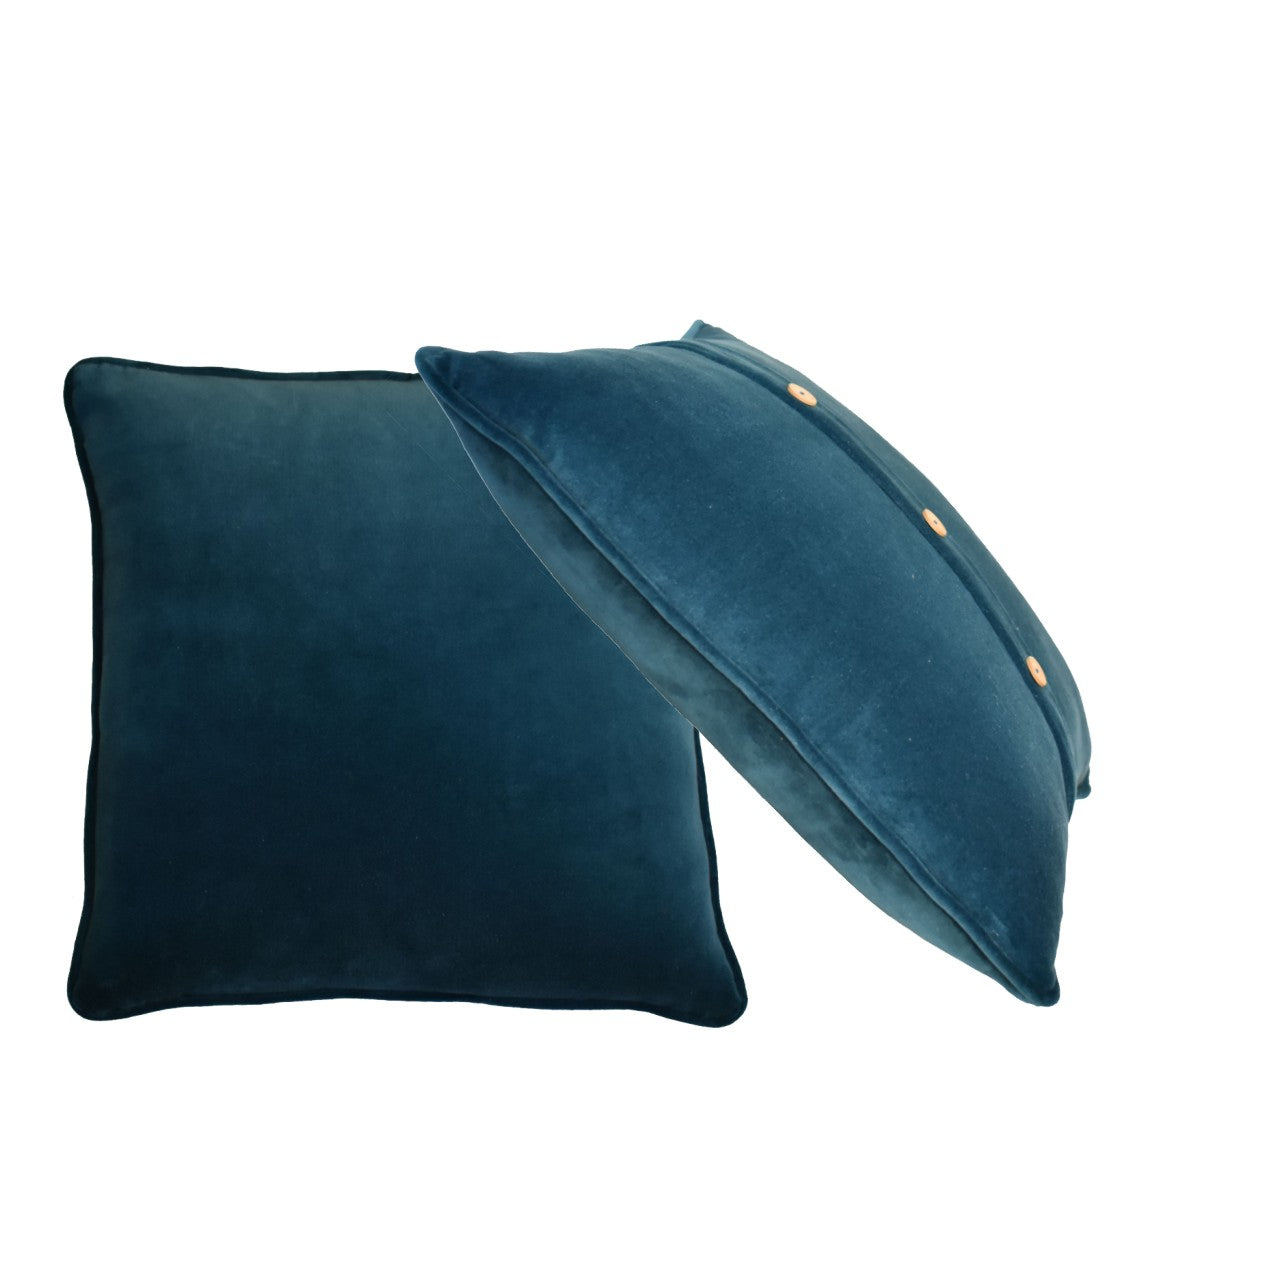 quinn cushion set of 2 teal